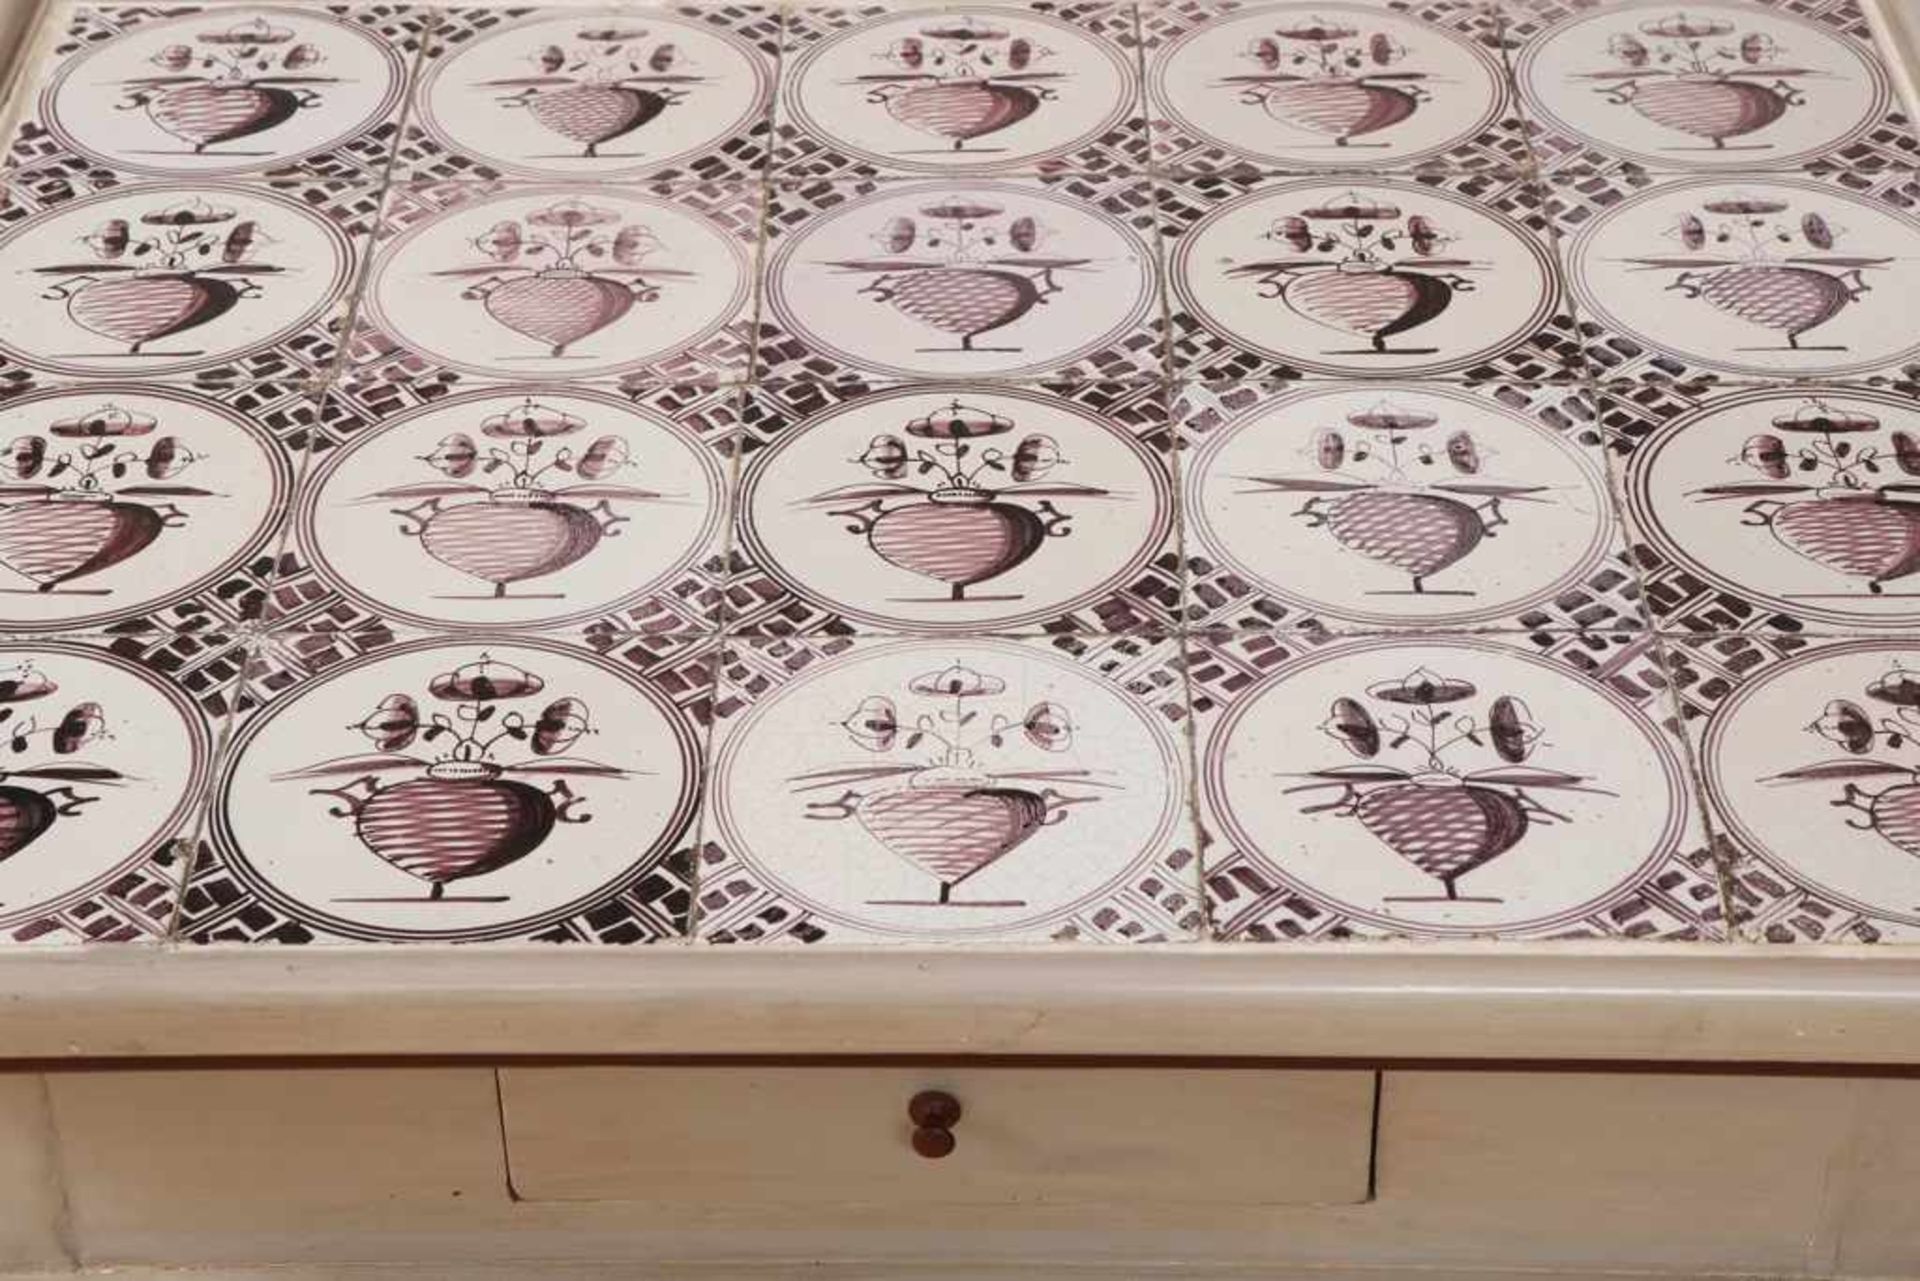 Sogenannter Tee-Tisch im friesischen Stil grau-rot gefasst, Deckplatte mit magentafarbenen Kacheln - Image 2 of 2